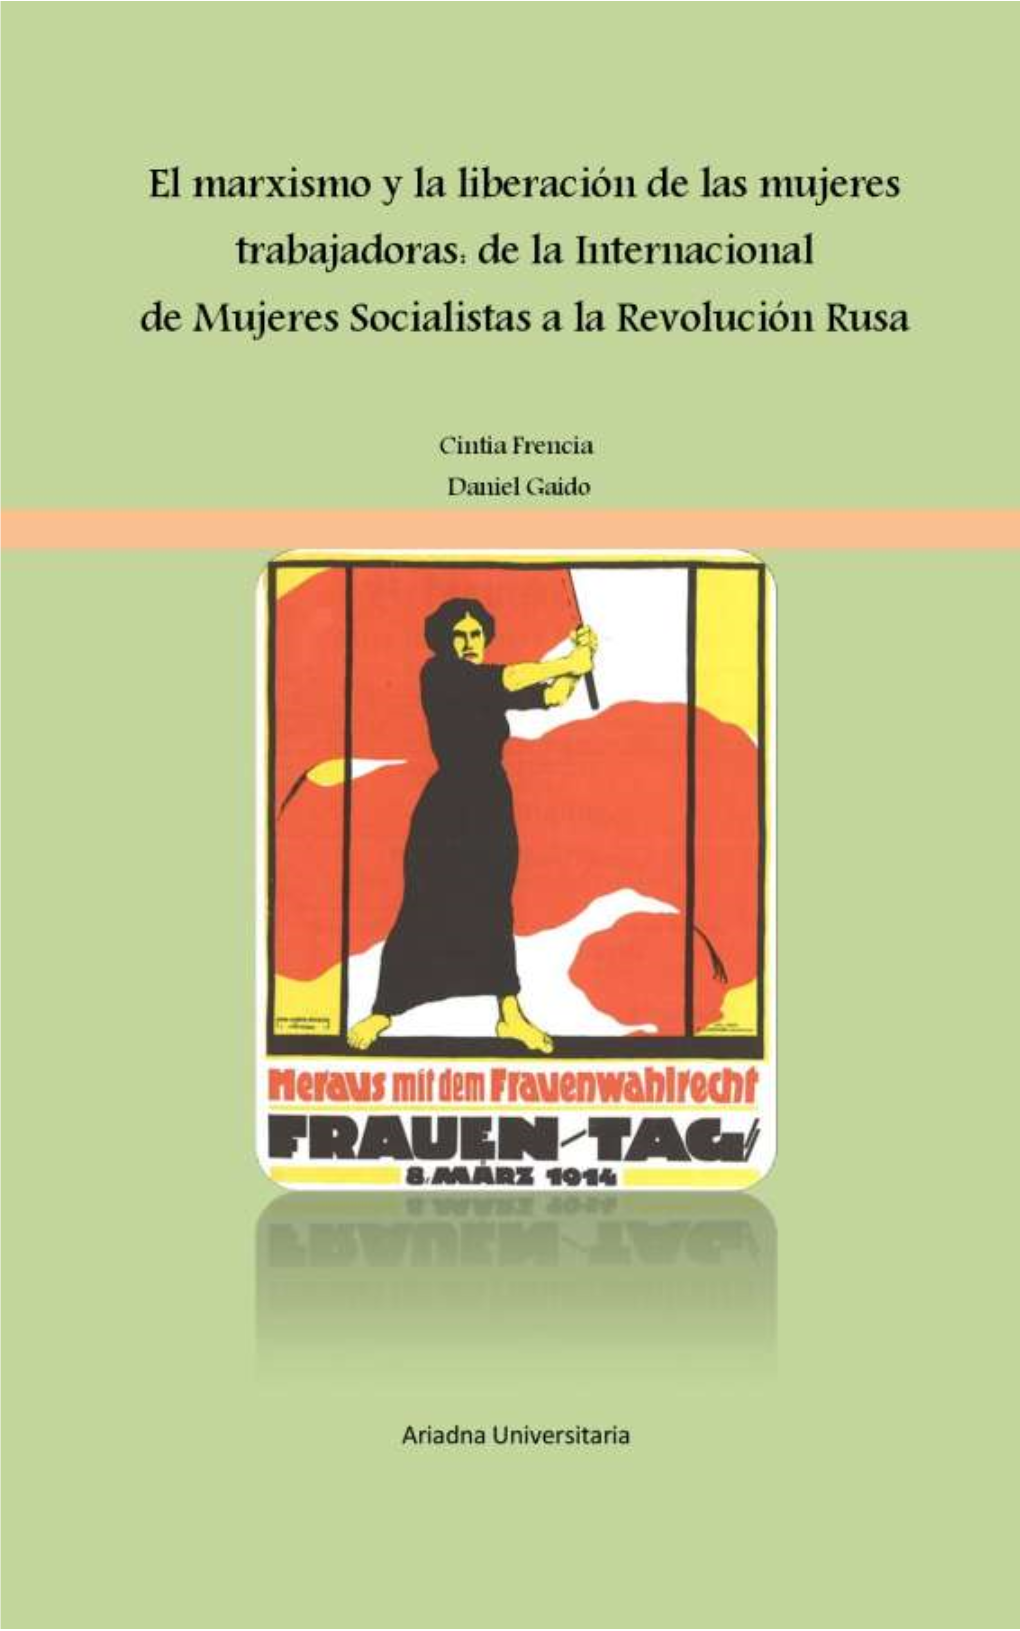 El Marxismo Y La Liberación De Las Mujeres Trabajadoras: De La Internacional De Mujeres Socialistas a La Revolución Rusa